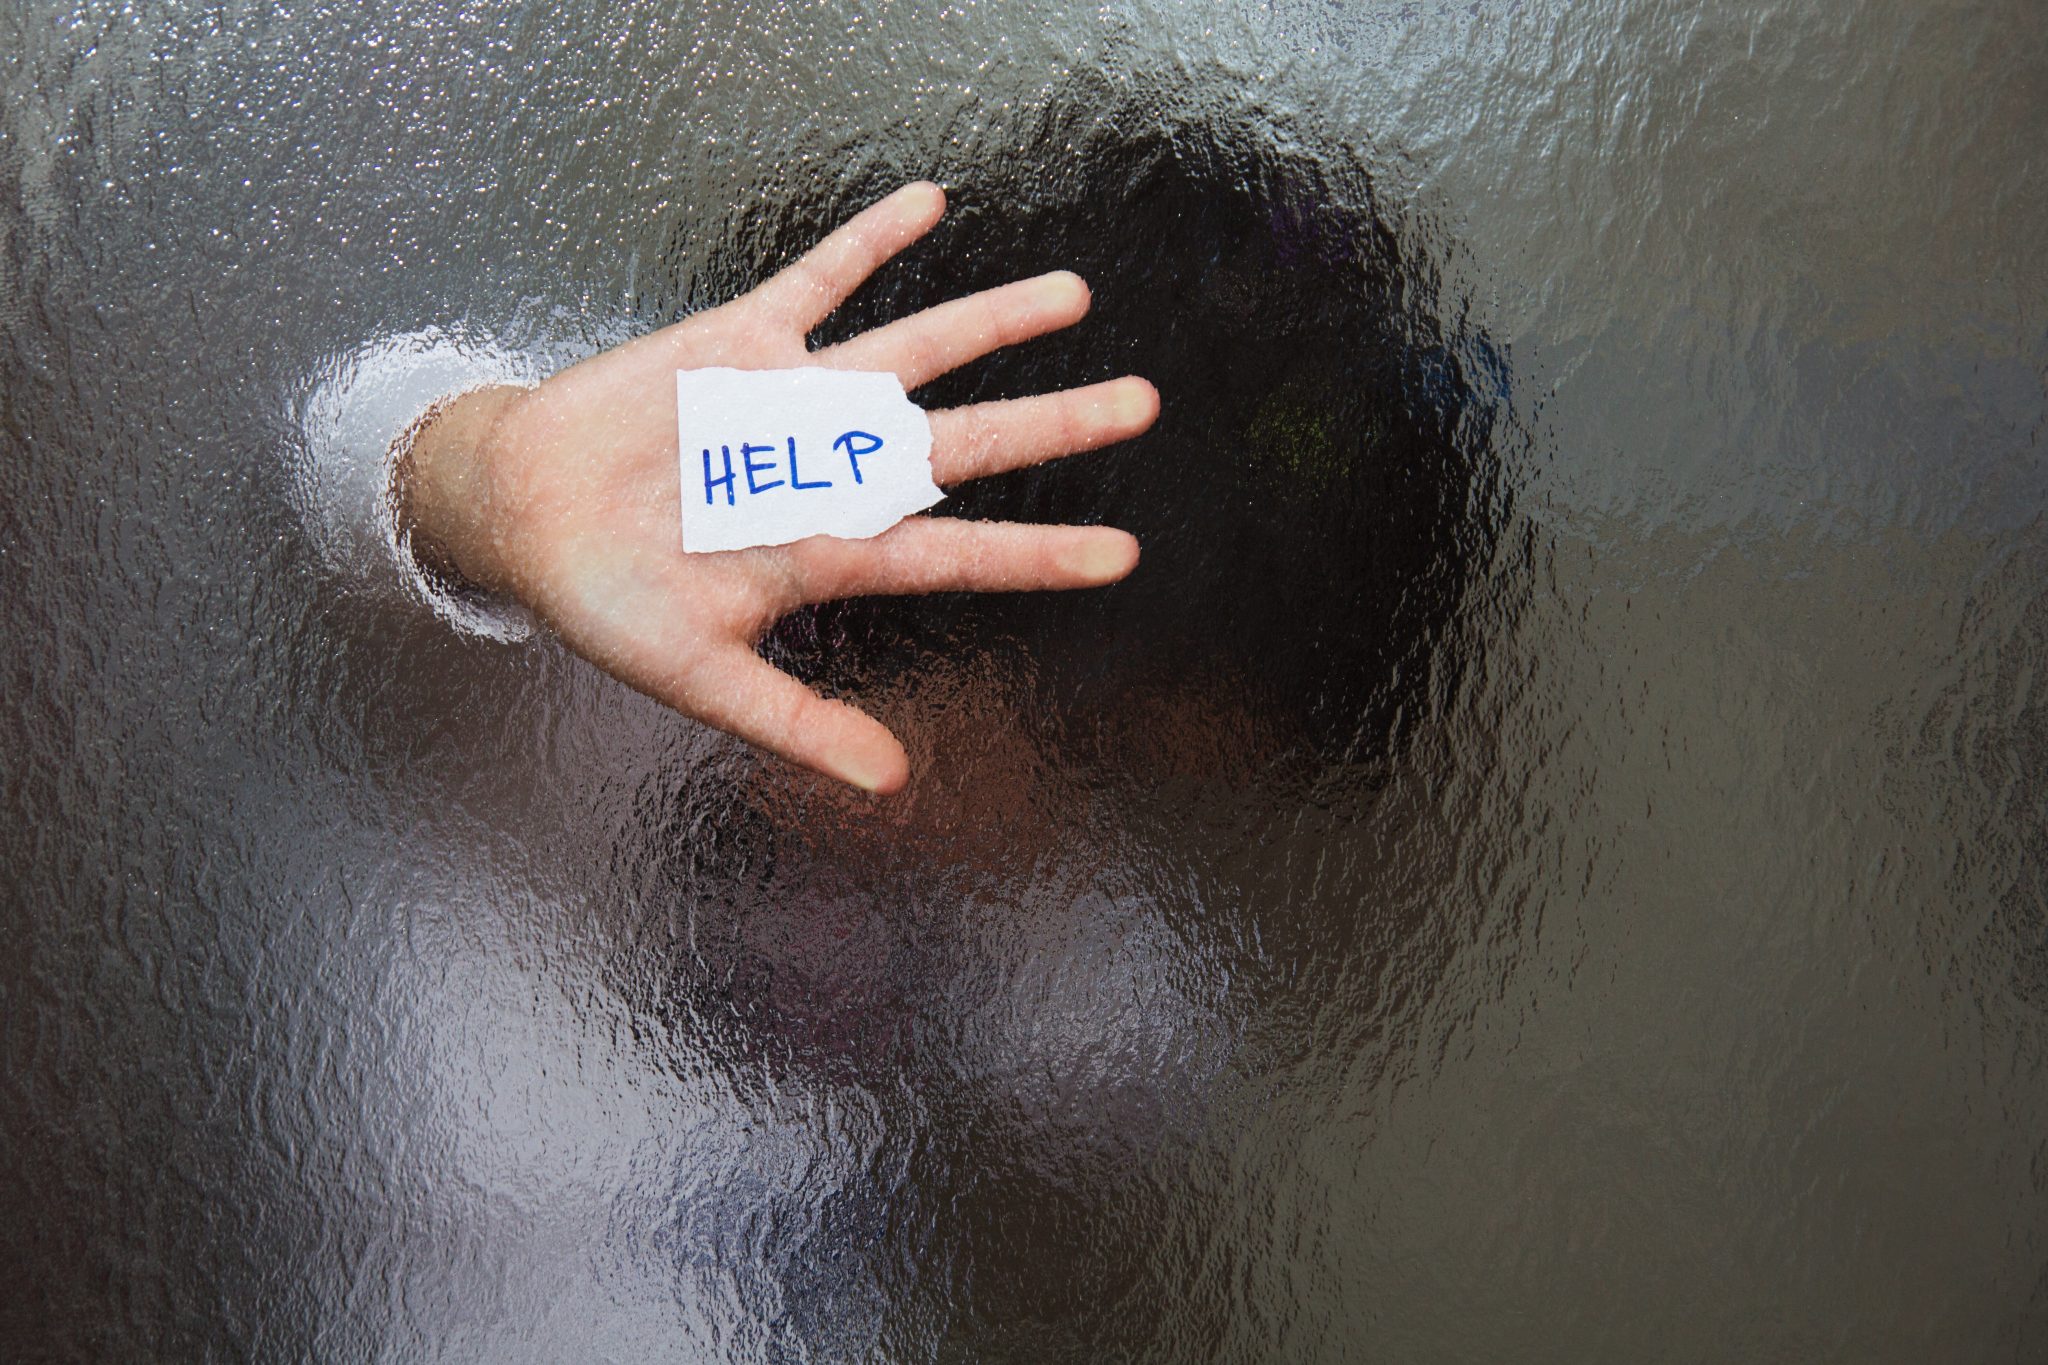 Woman behind glass door with 'Help' message